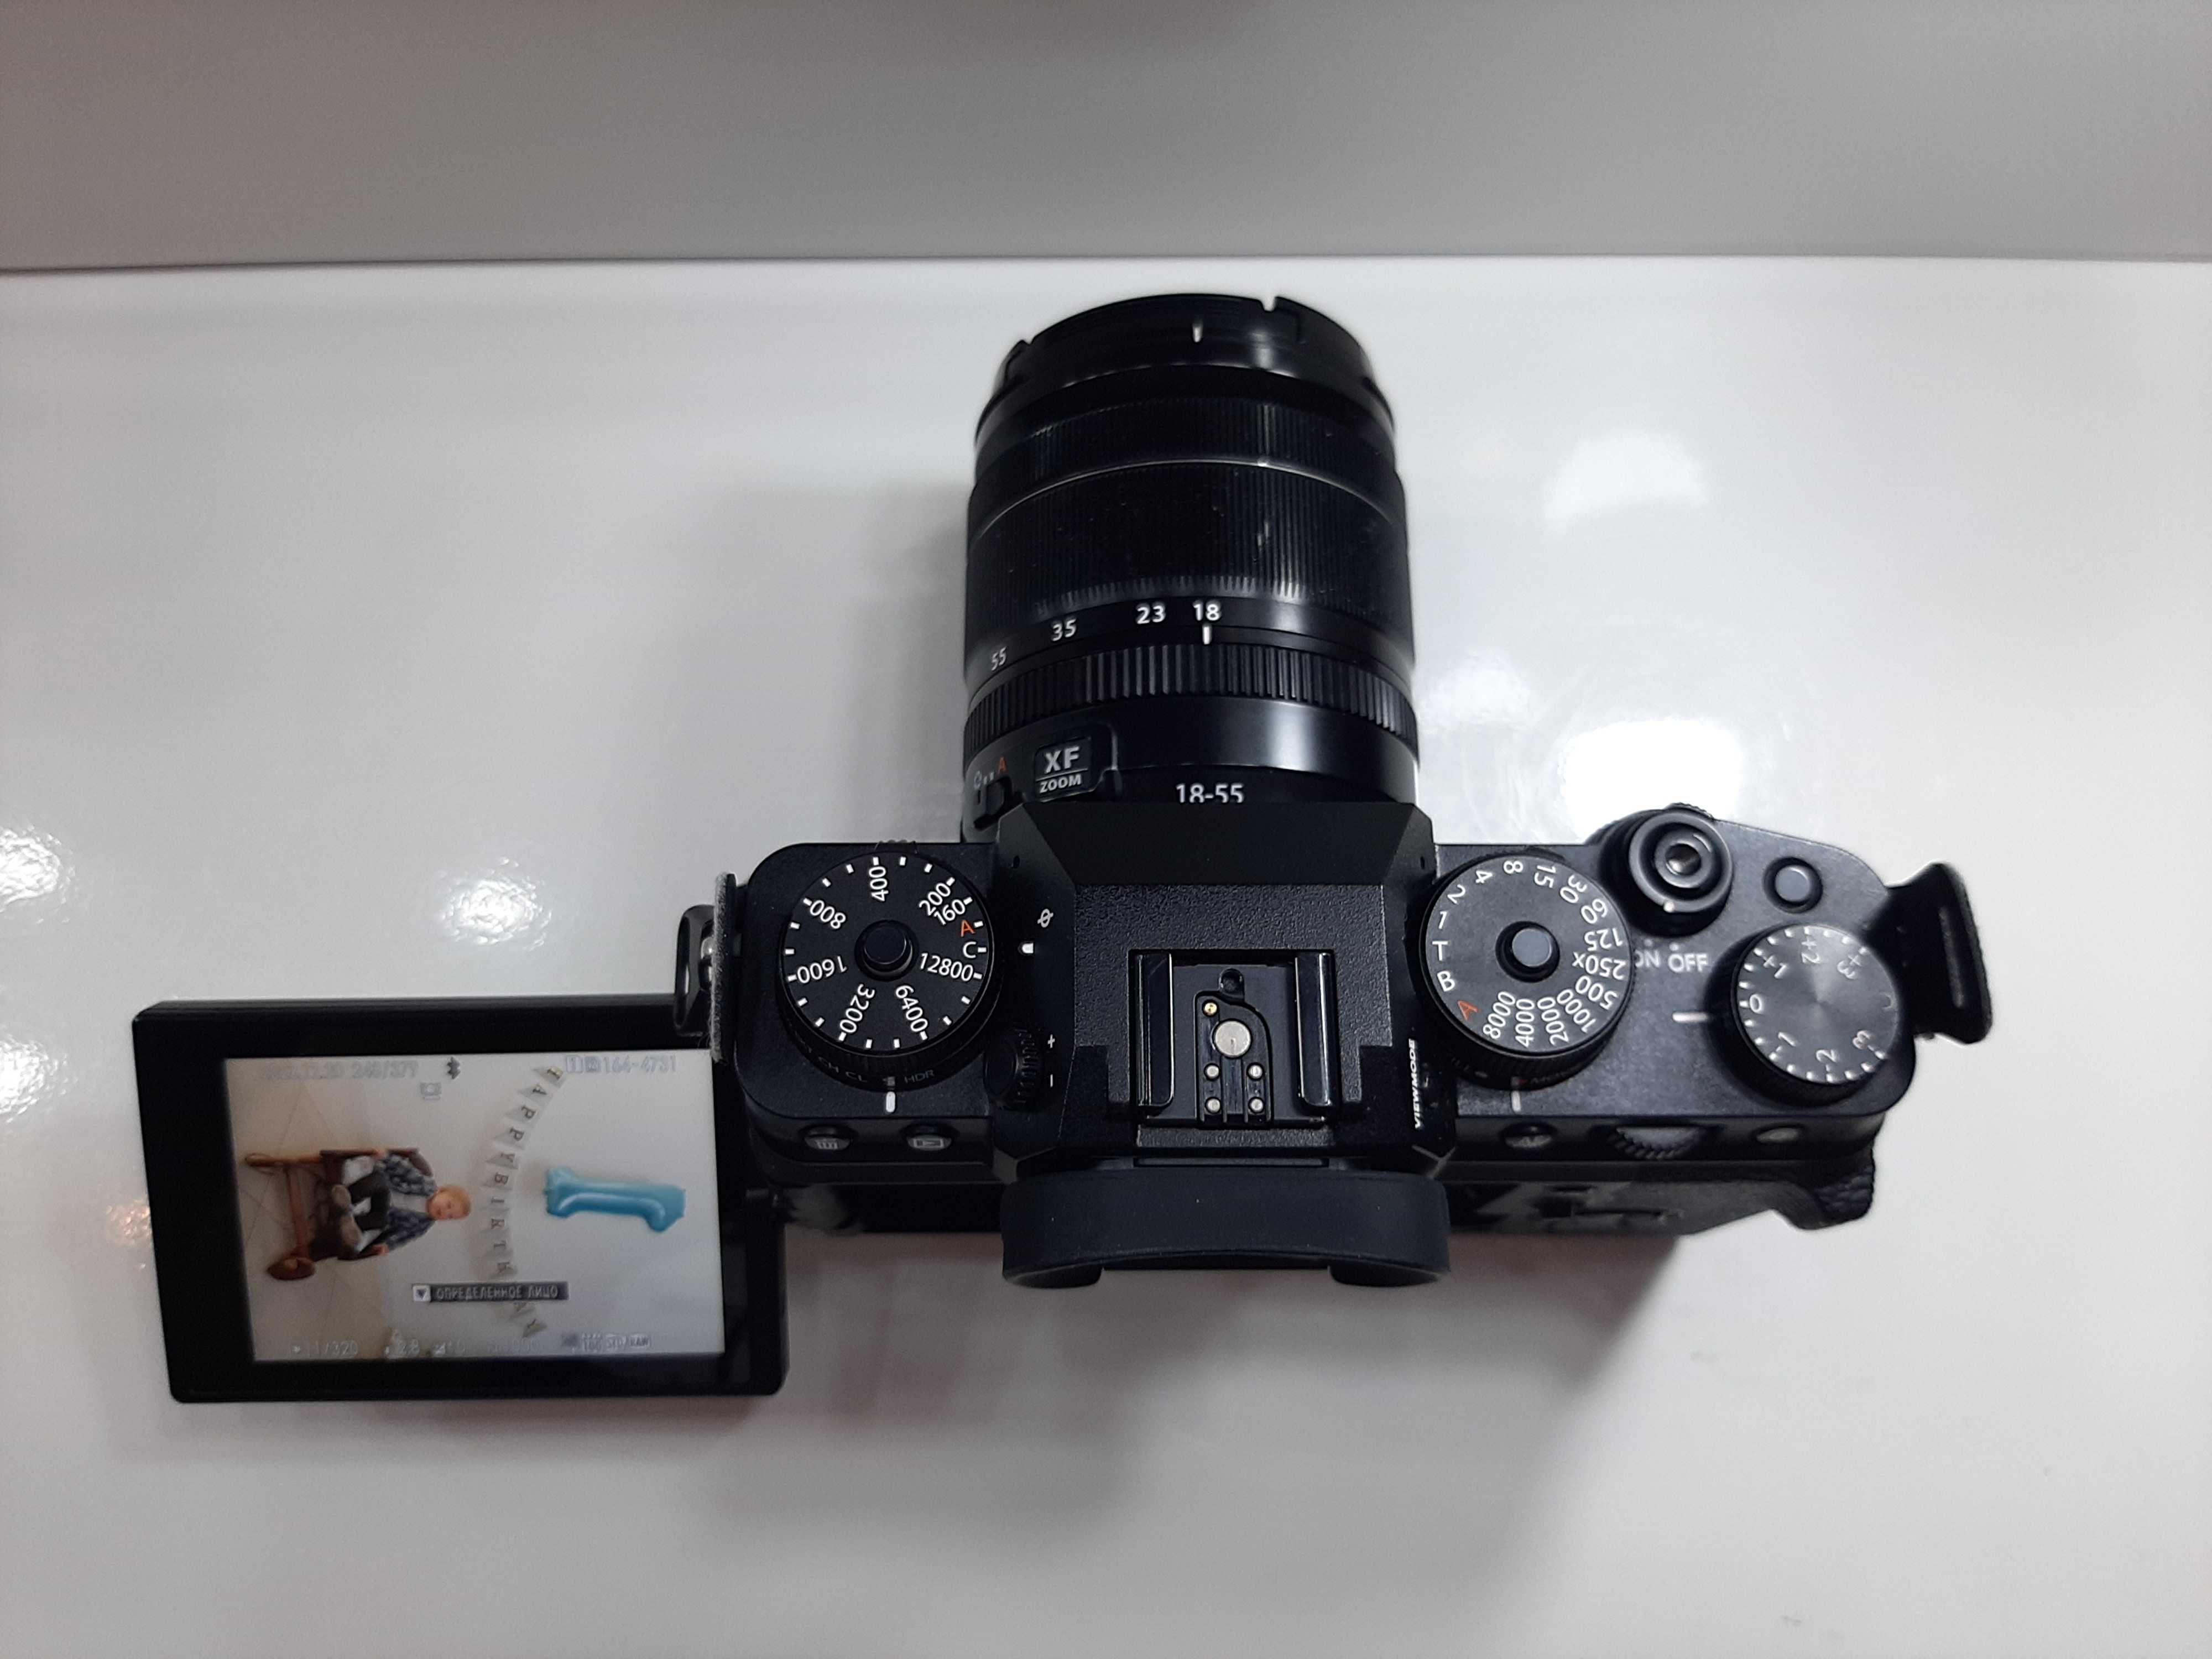 Об'єктив Fujifilm 18-55 mm f/2.8